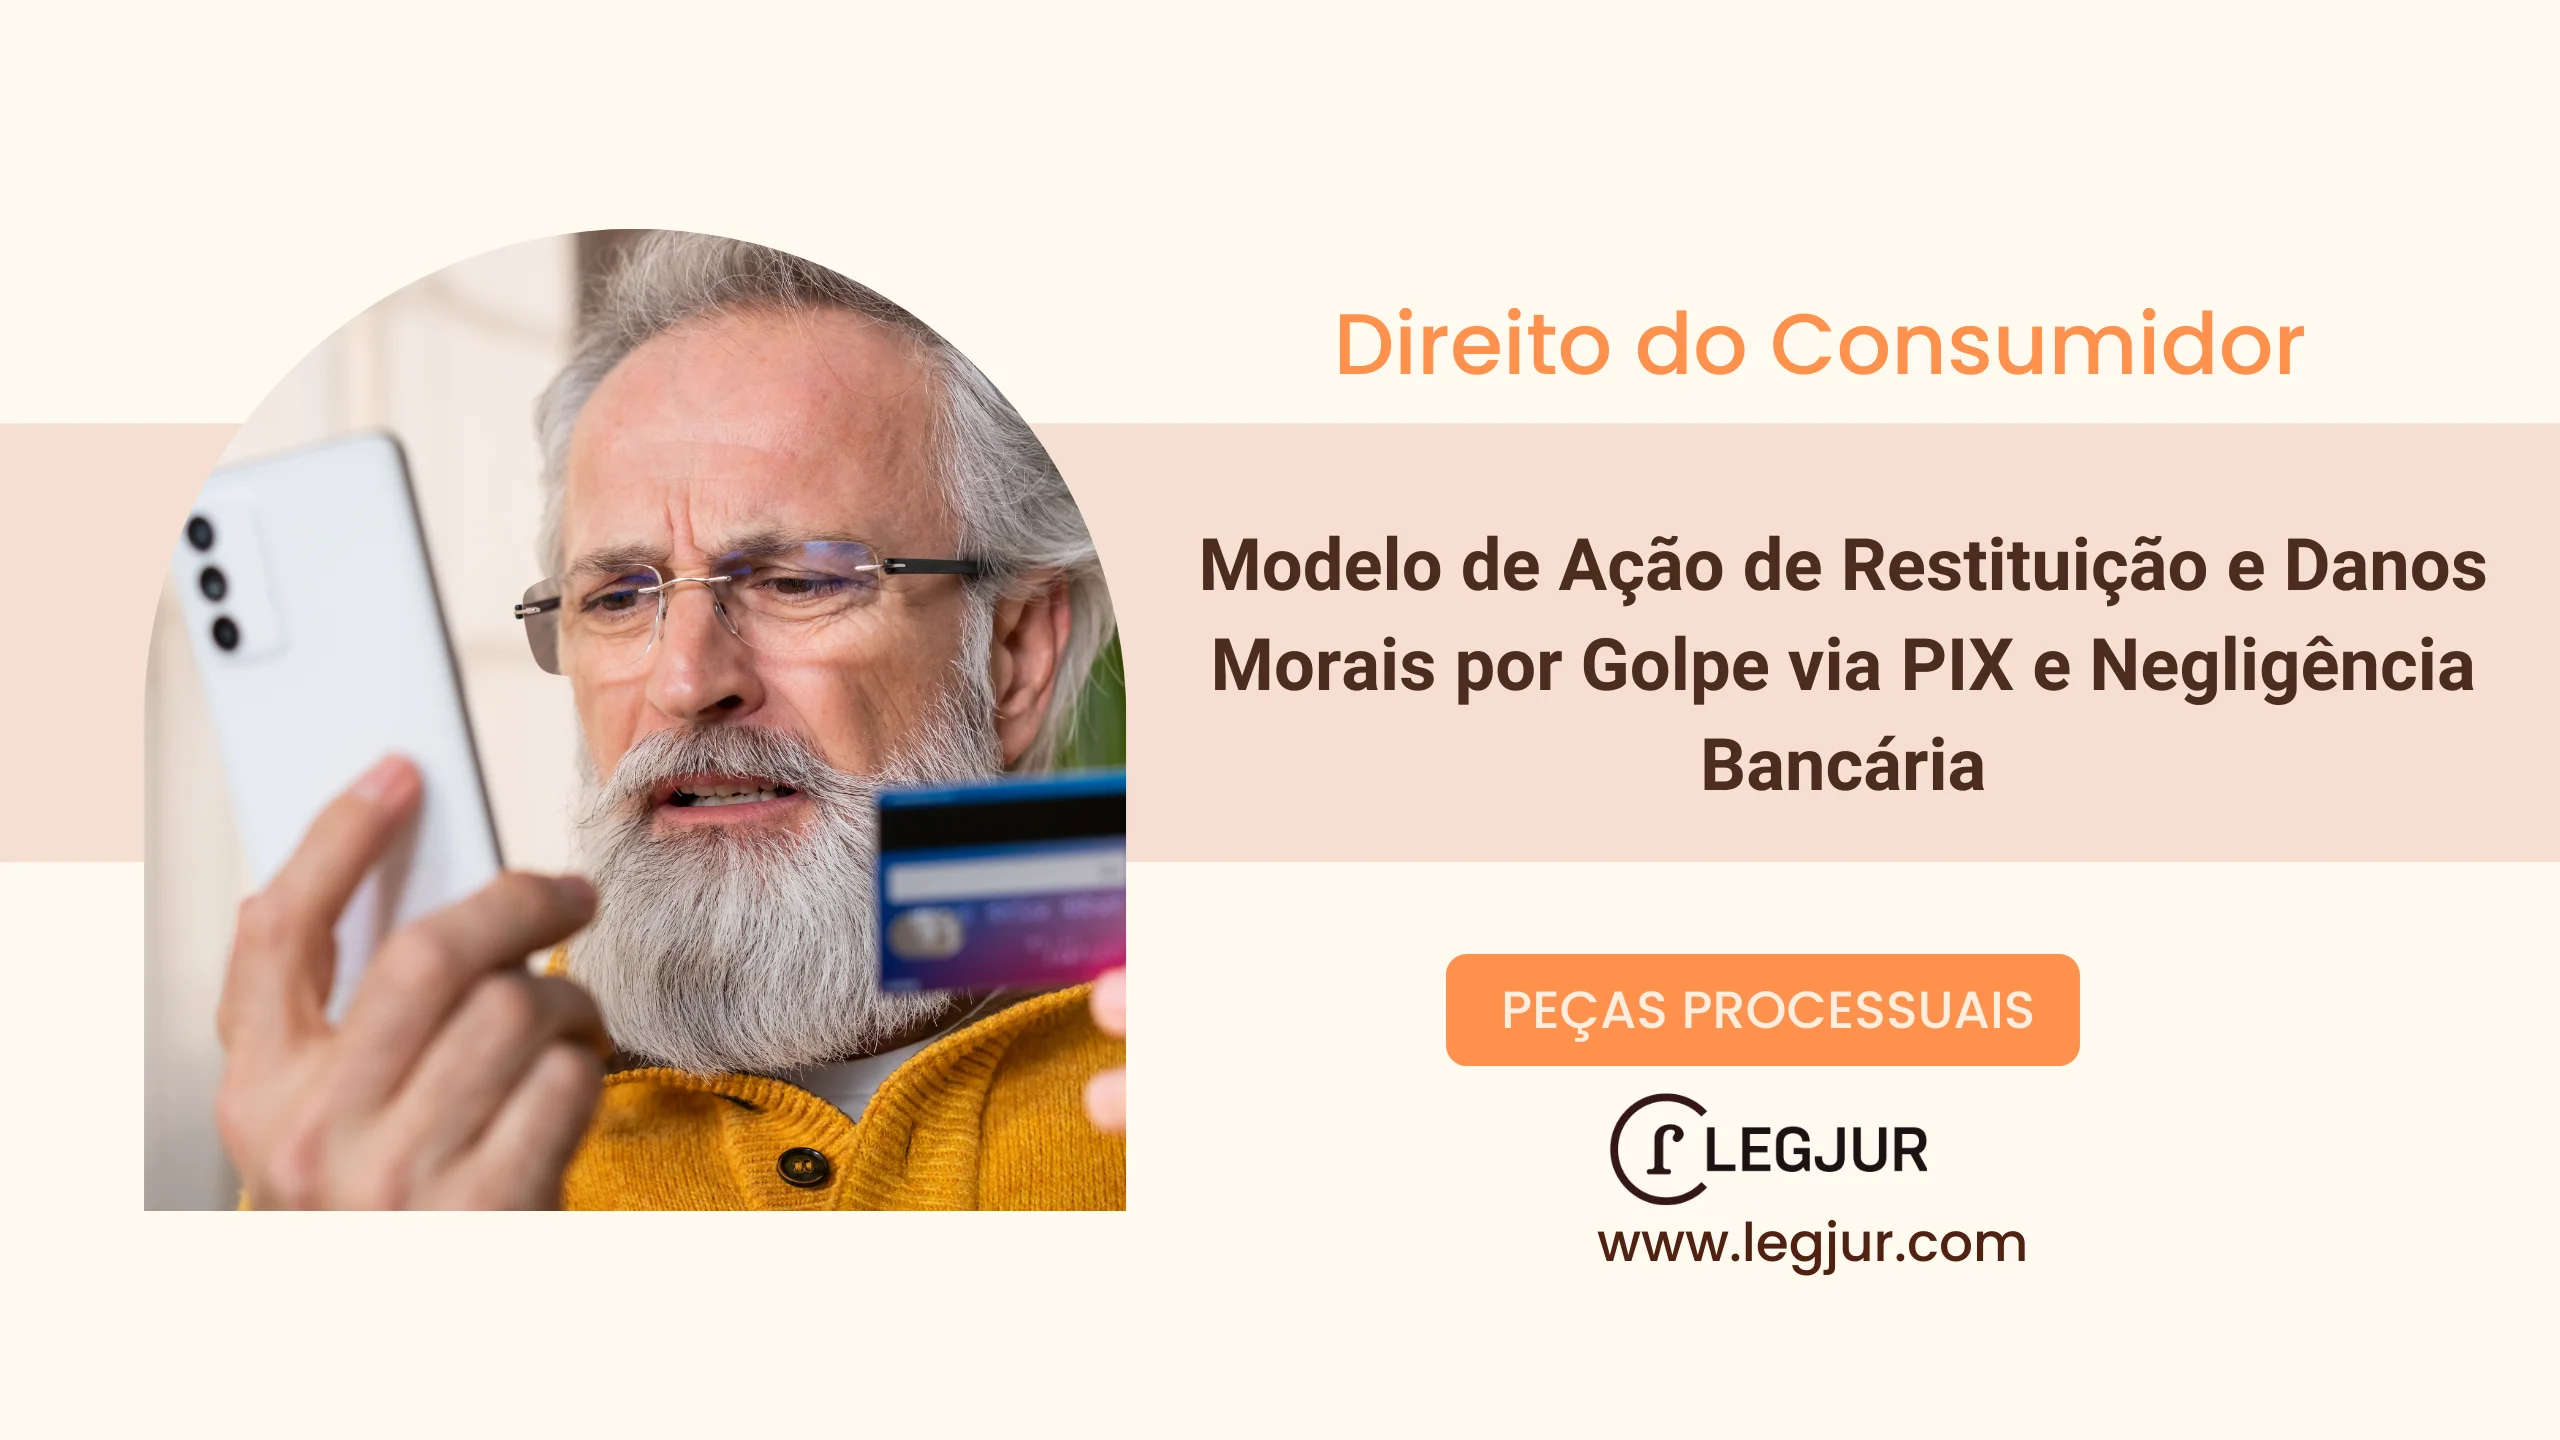 Modelo de Ação de Restituição e Danos Morais por Golpe via PIX e Negligência Bancária